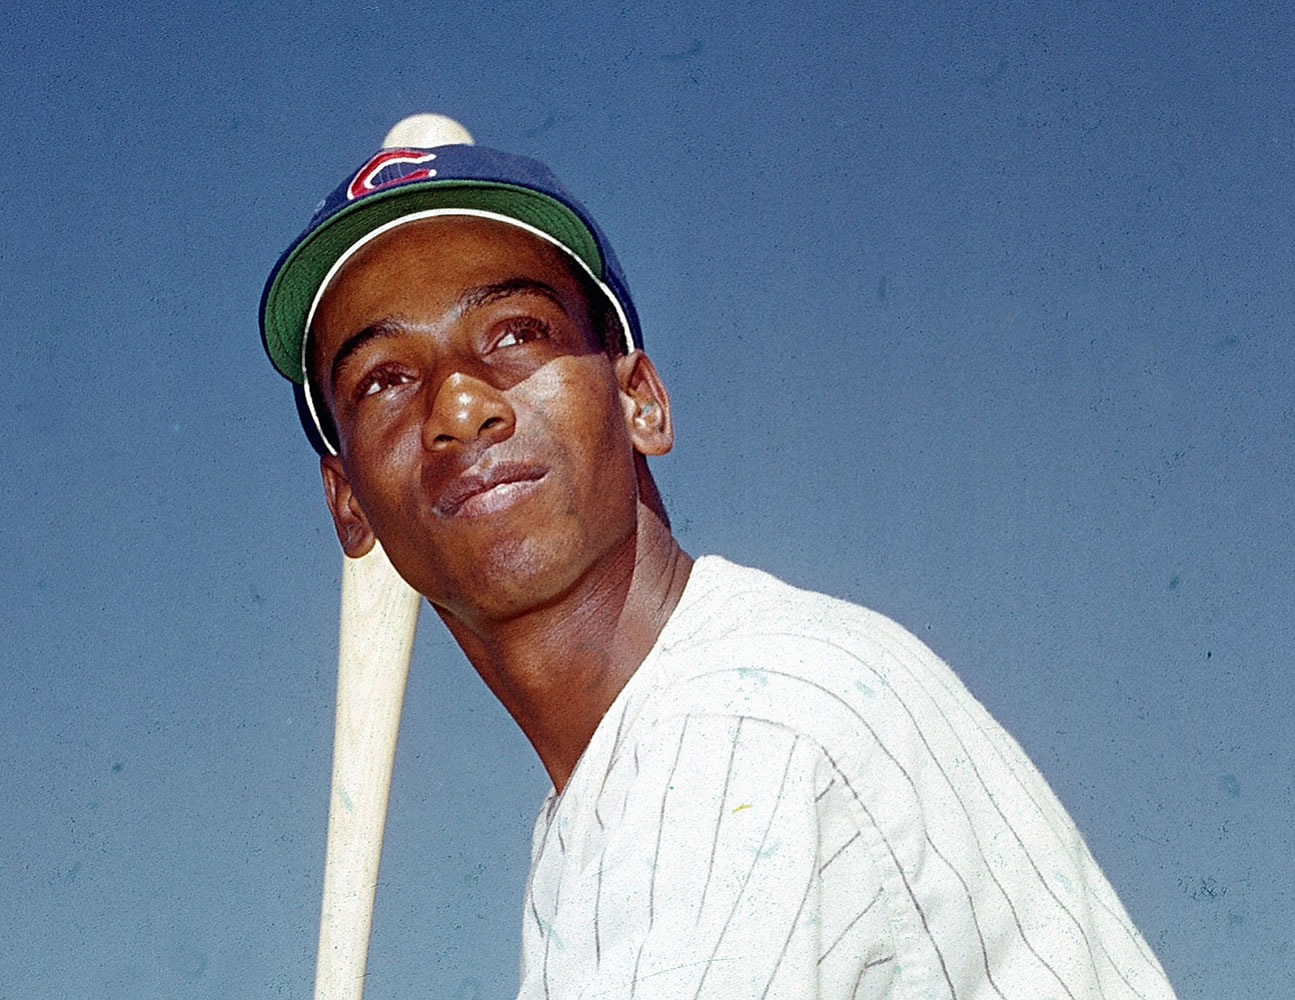 Chicago Cubs Hall of Famer Ernie Banks dies at 83 - Deseret News